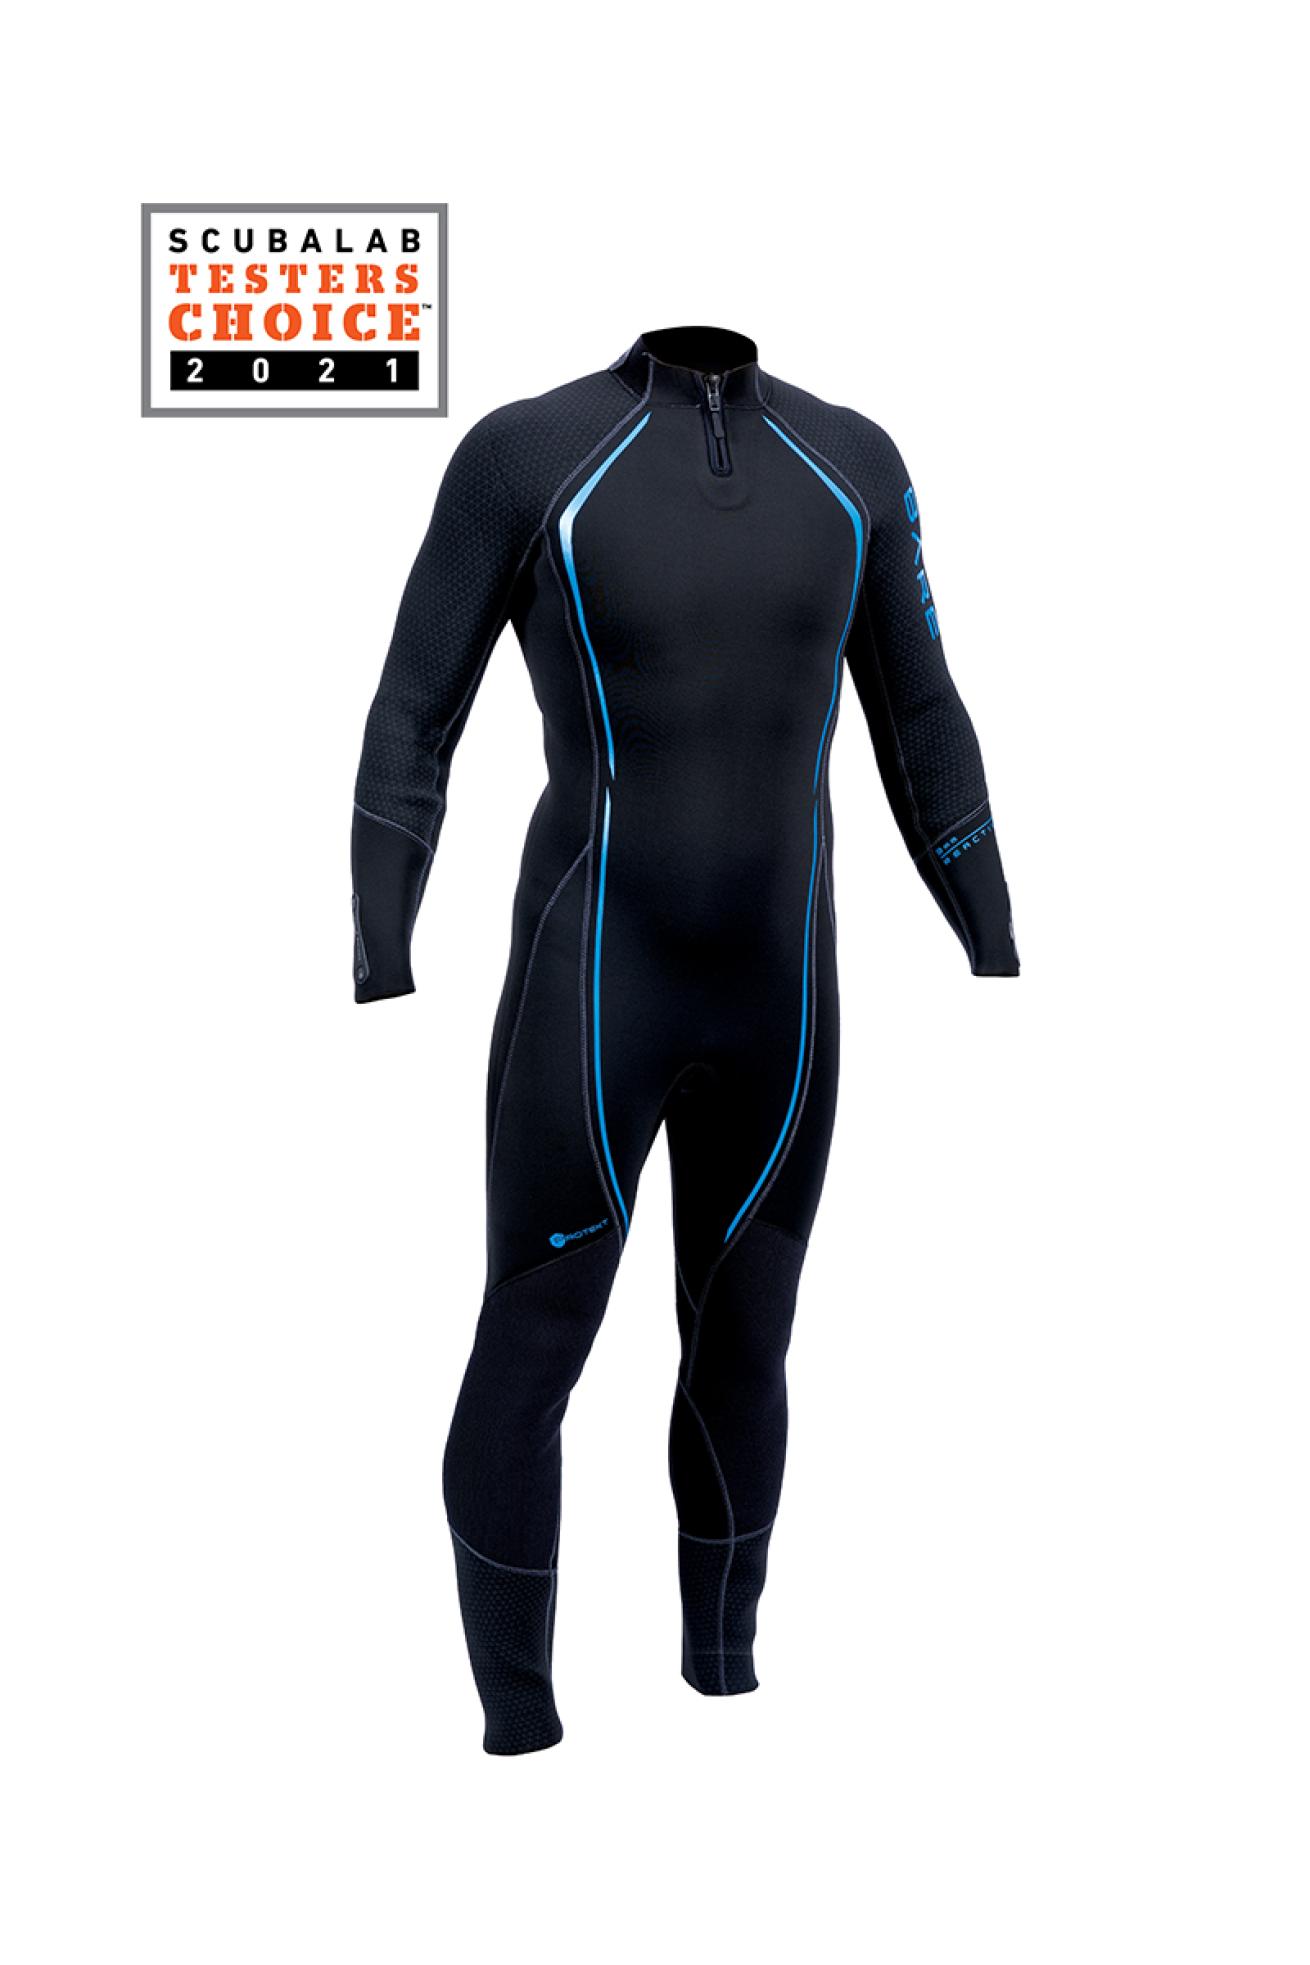 Best Scuba Diving Men's Wetsuits